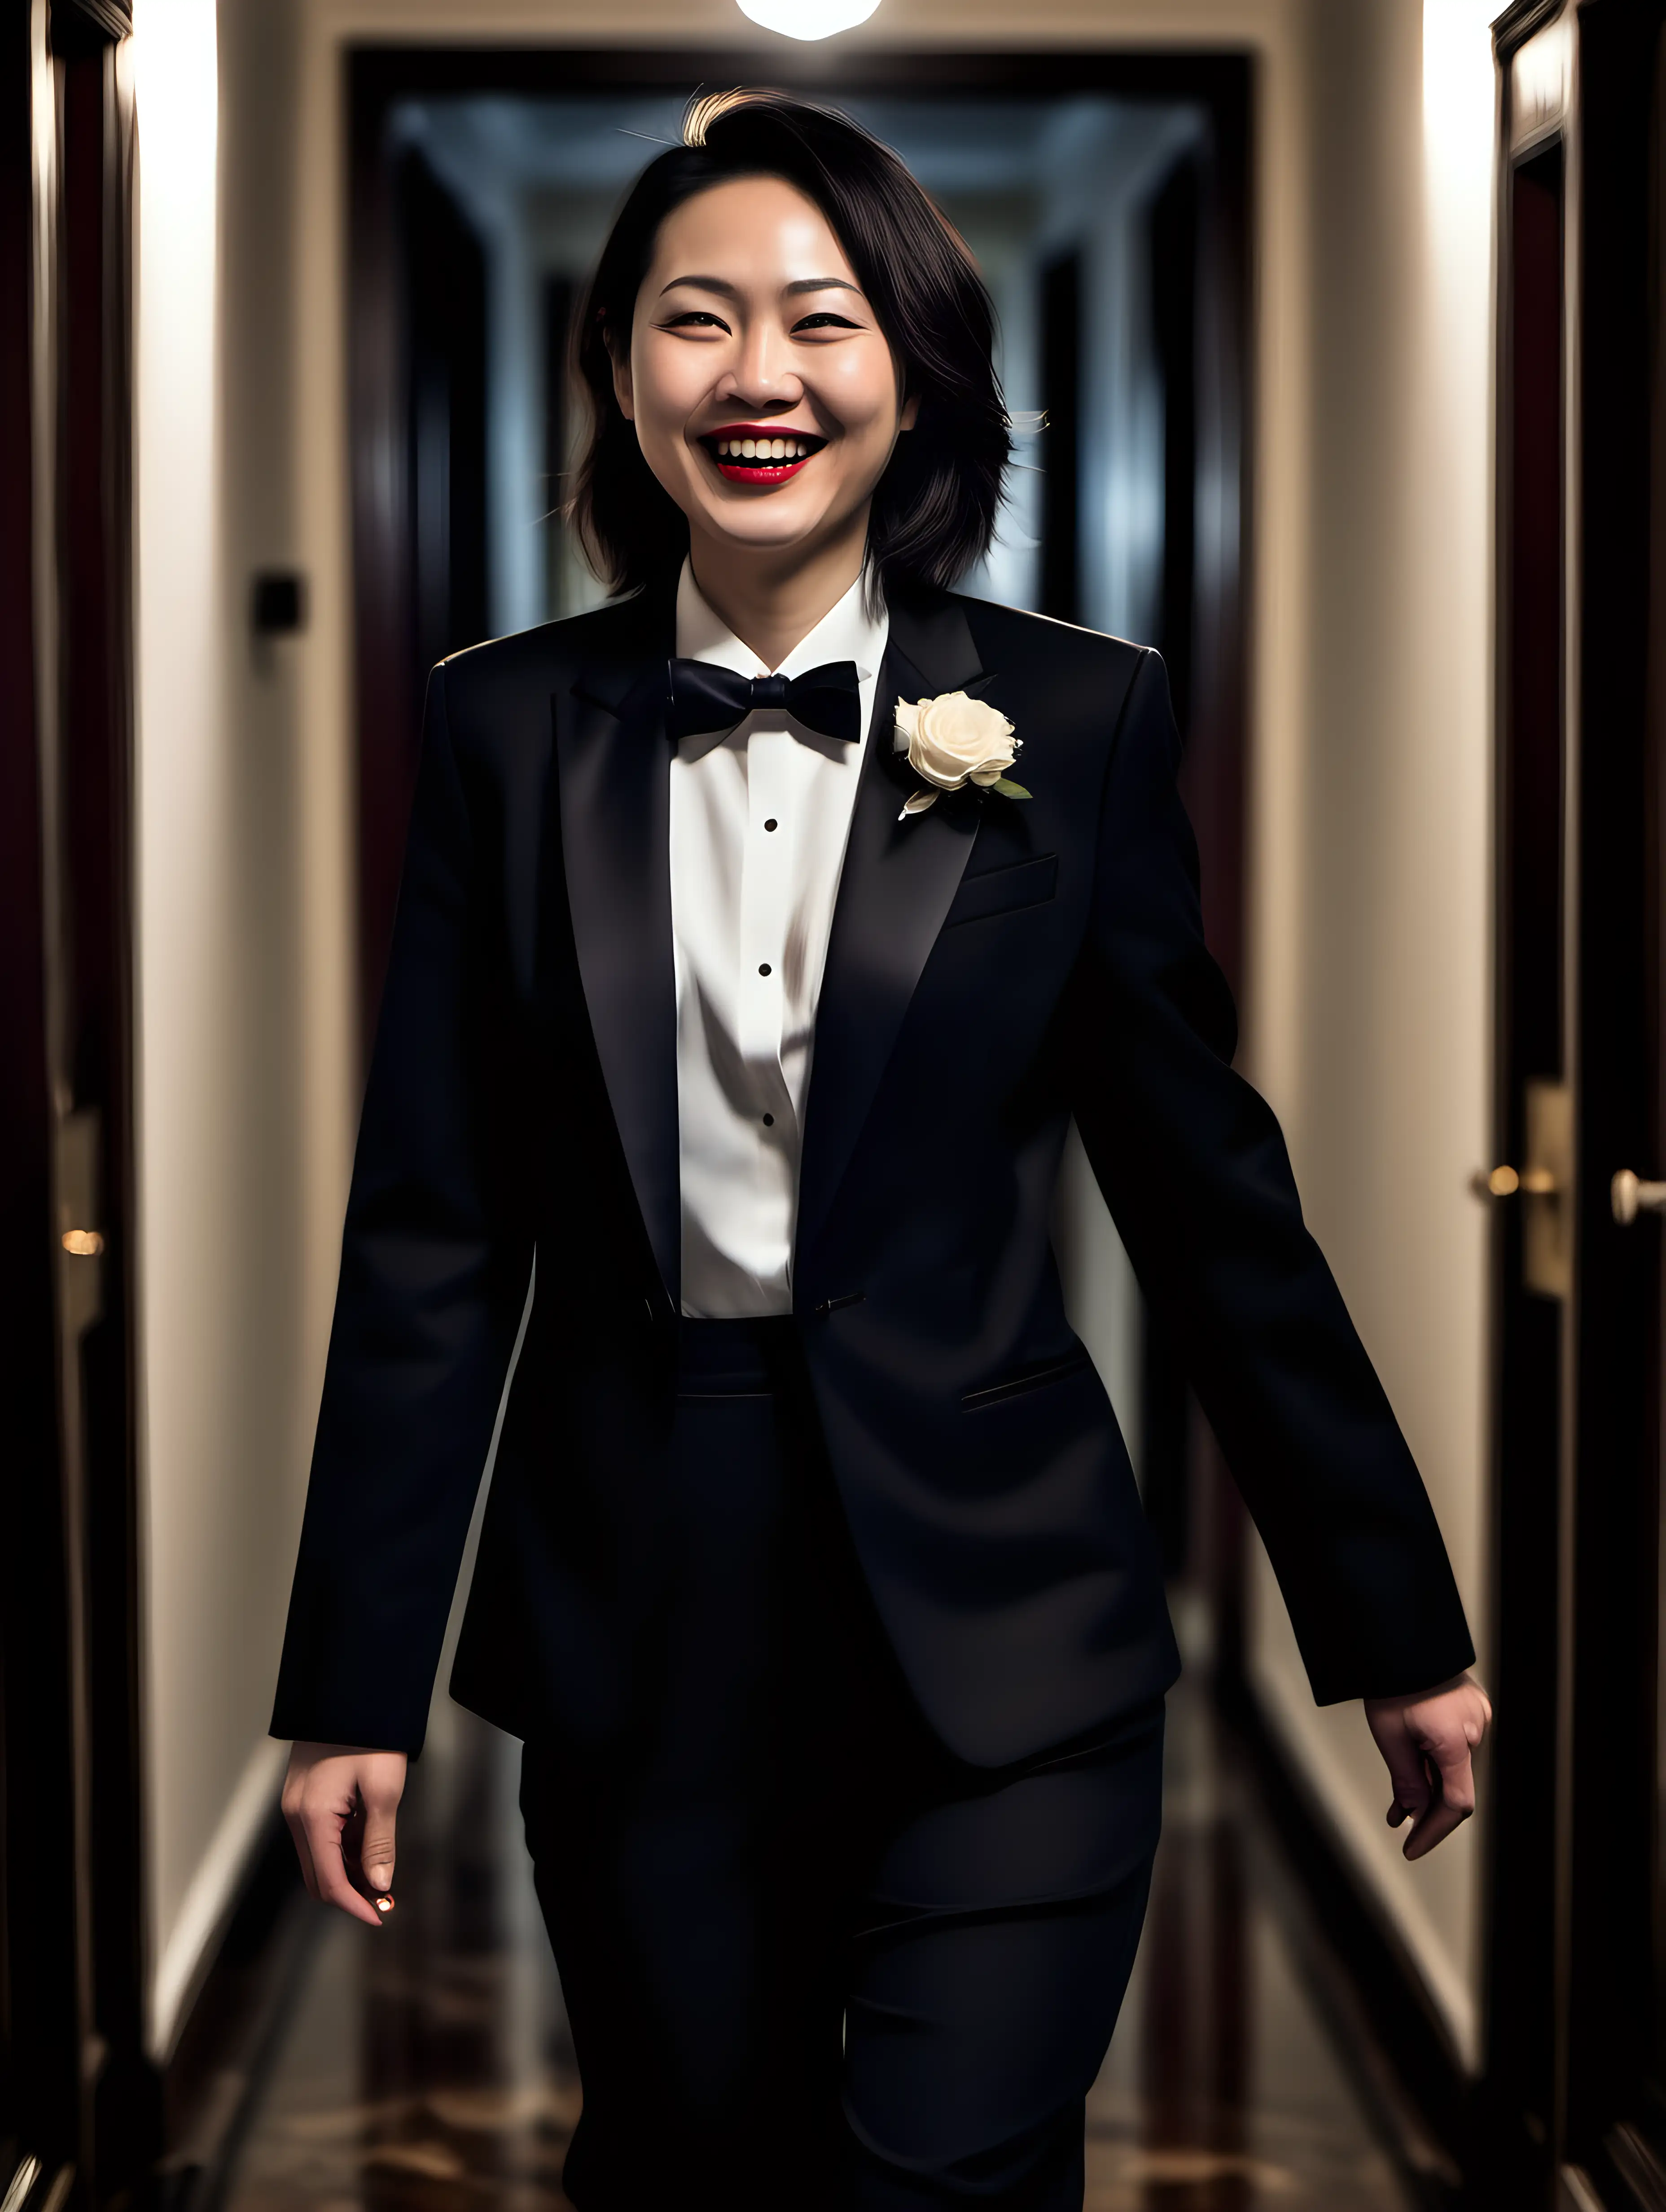 Smiling-Chinese-Woman-in-Tuxedo-Walking-Through-Mansion-Hallway-at-Night